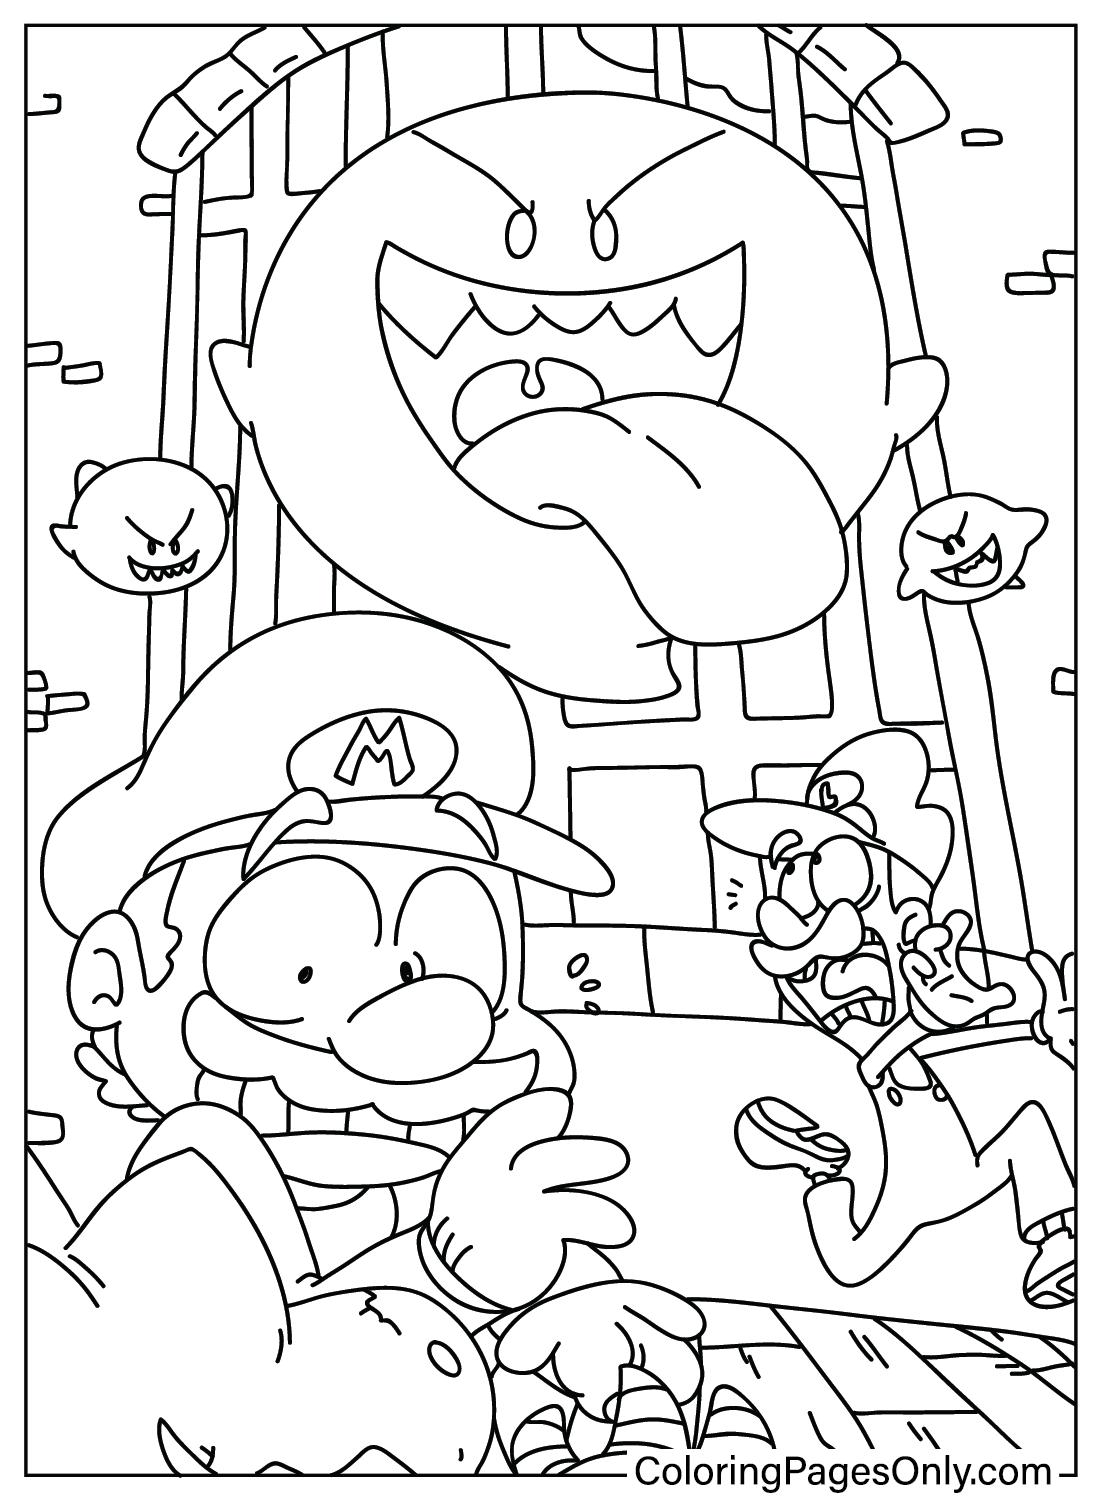 Página para colorir de Mario Halloween para imprimir de Mario Halloween